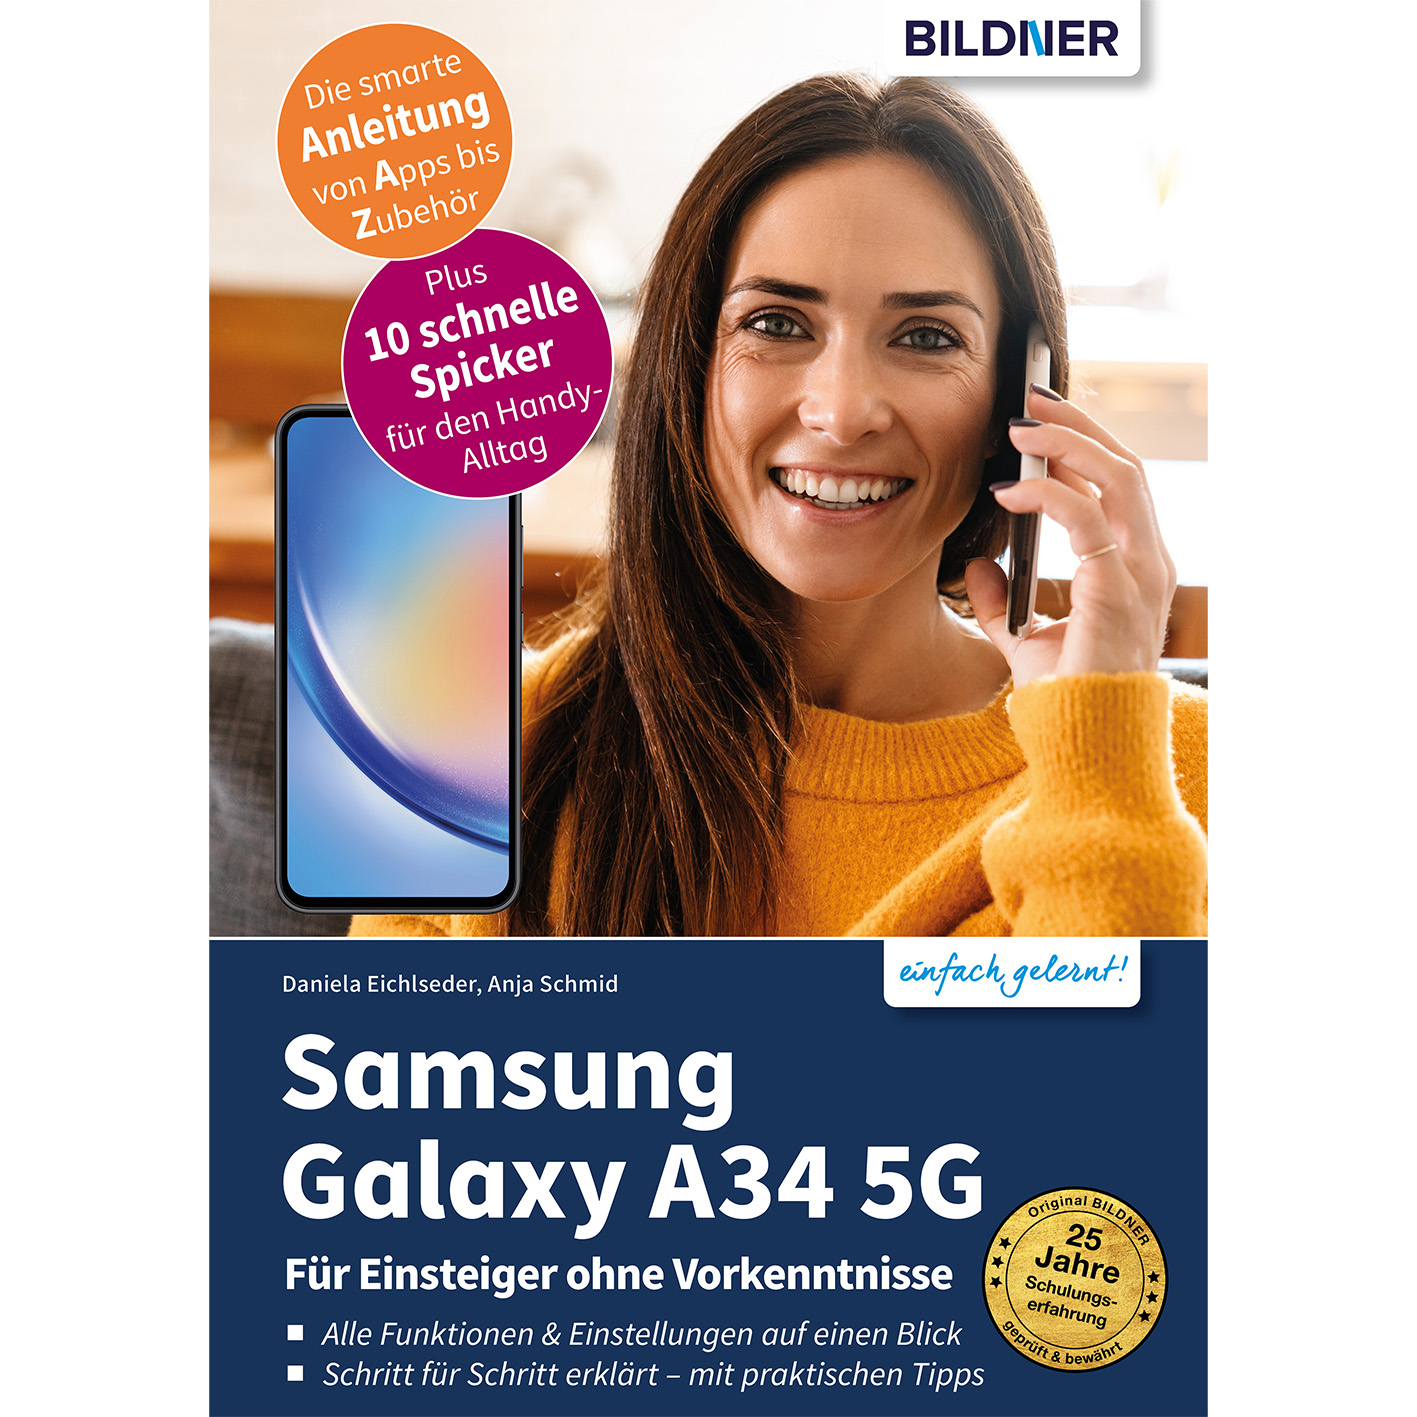 Samsung Galaxy A34 5G Vorkenntnisse Für ohne - Einsteiger